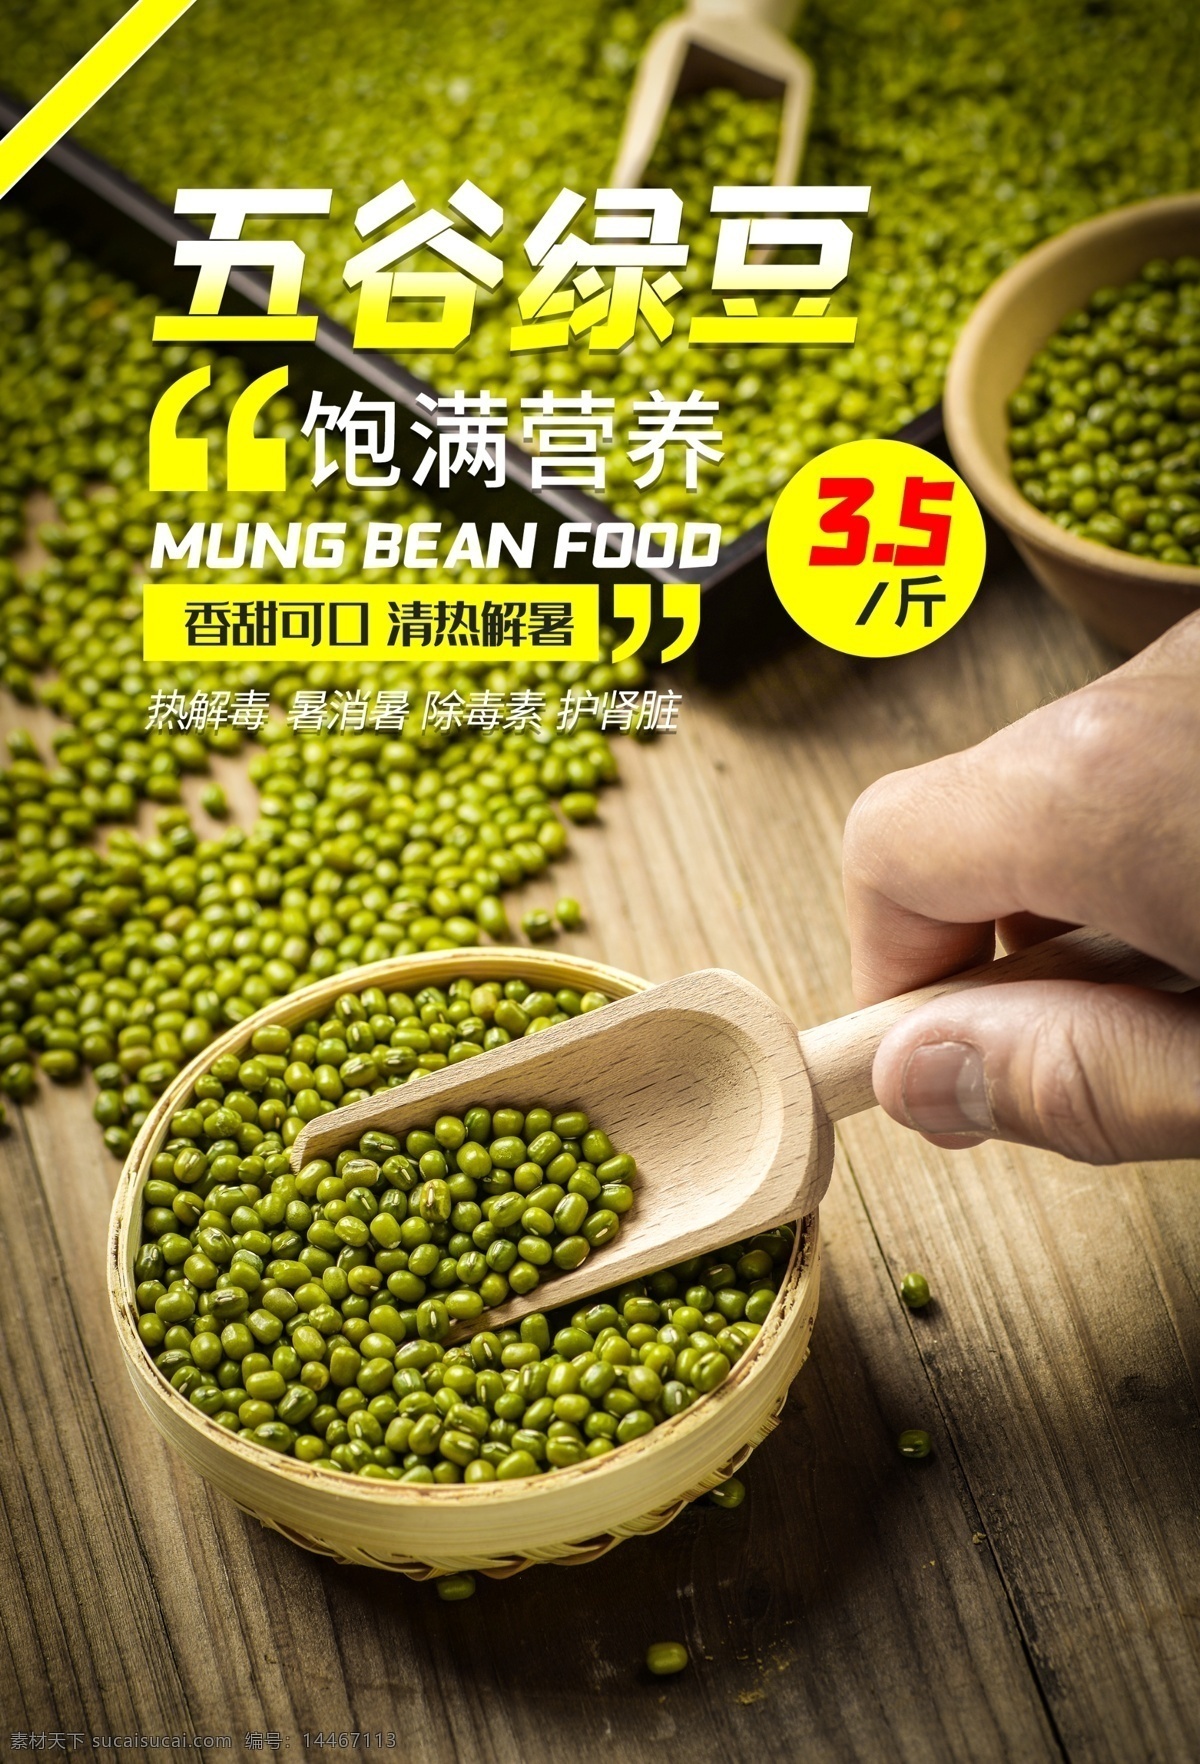 五谷 绿豆 促销活动 宣传海报 五谷绿豆 促销 活动 宣传 海报 餐饮美食 类